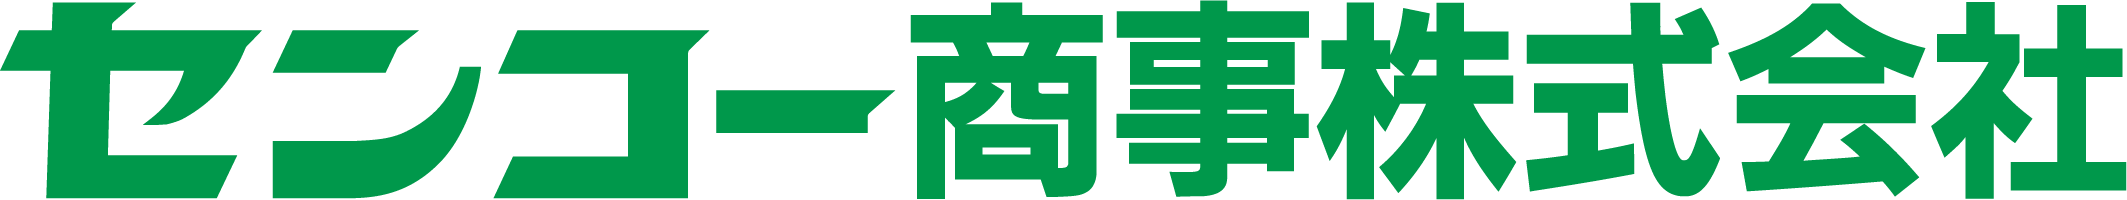 センコー商事_ロゴ-和字_green